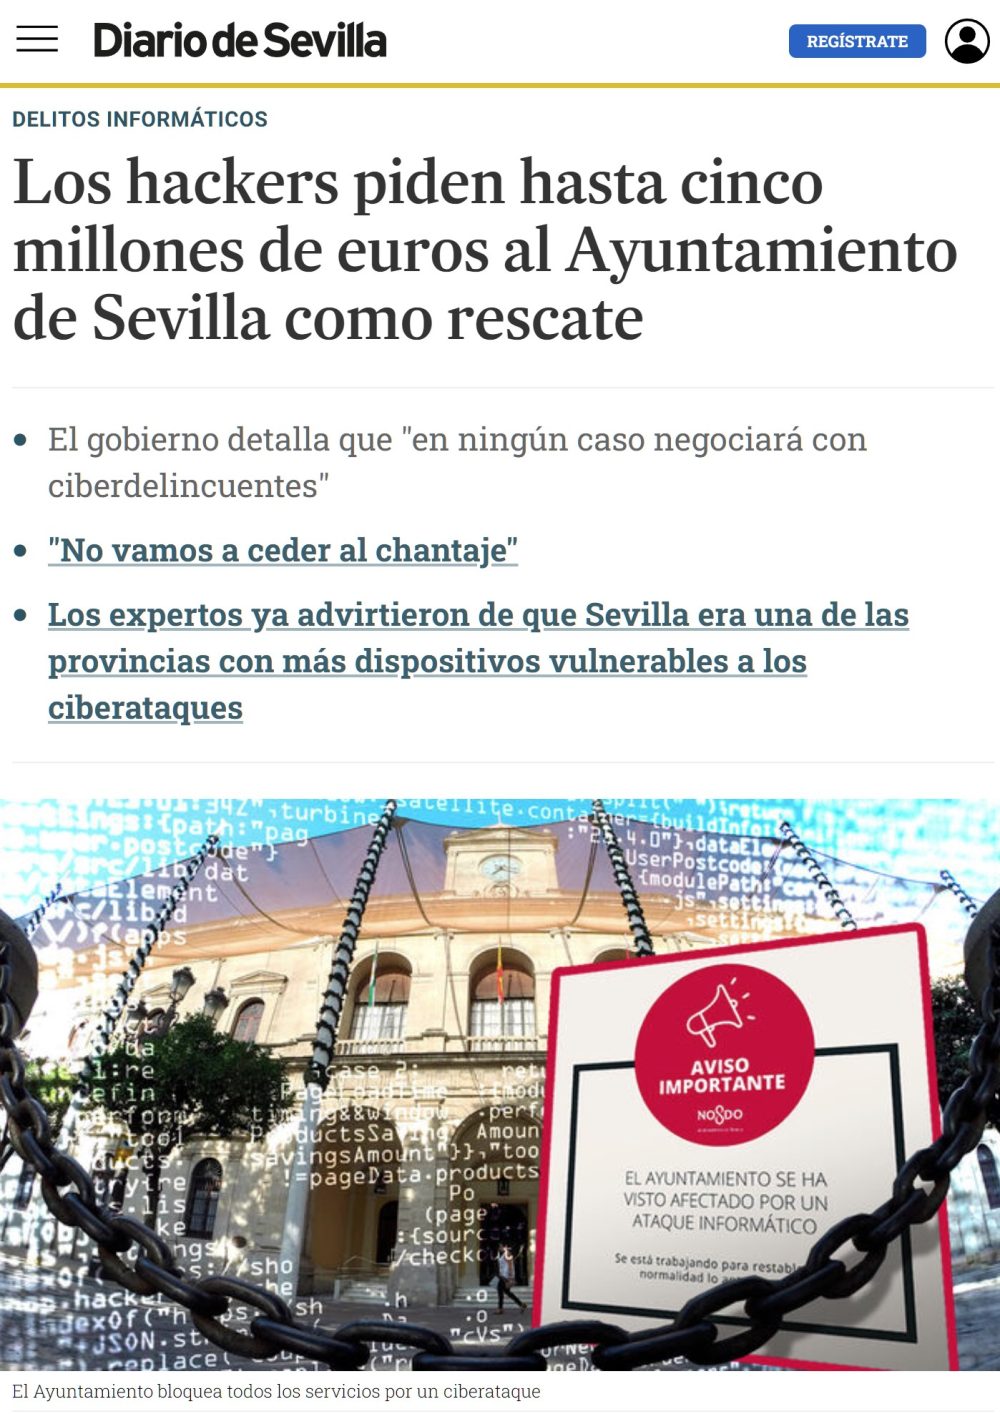 Hackers piden 5 millones de euros al ayuntamiento de Sevilla